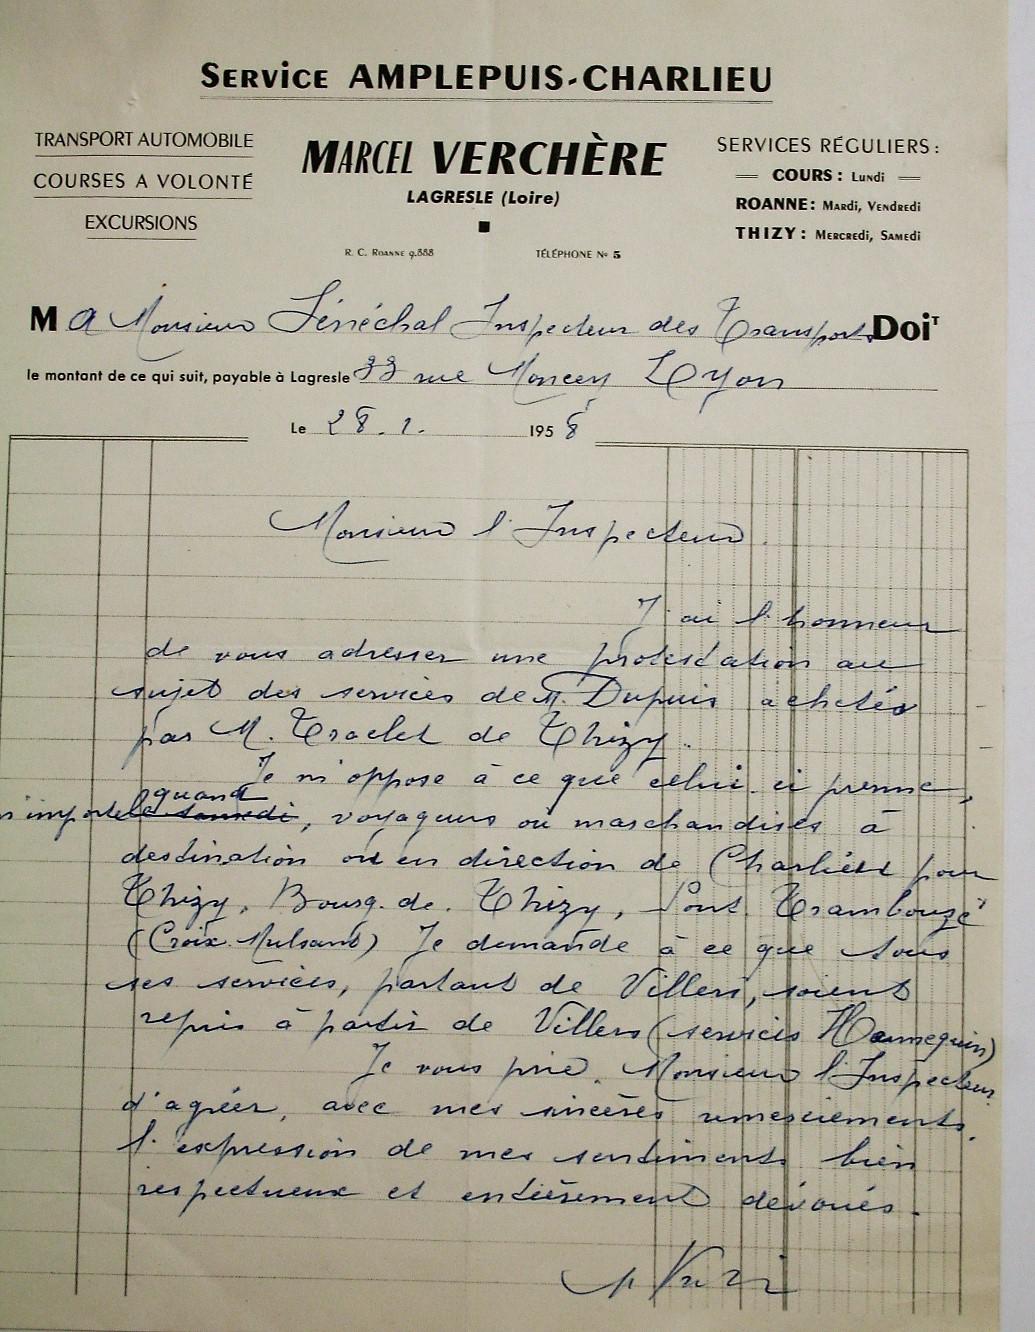 objection letter from Marcel Verchere